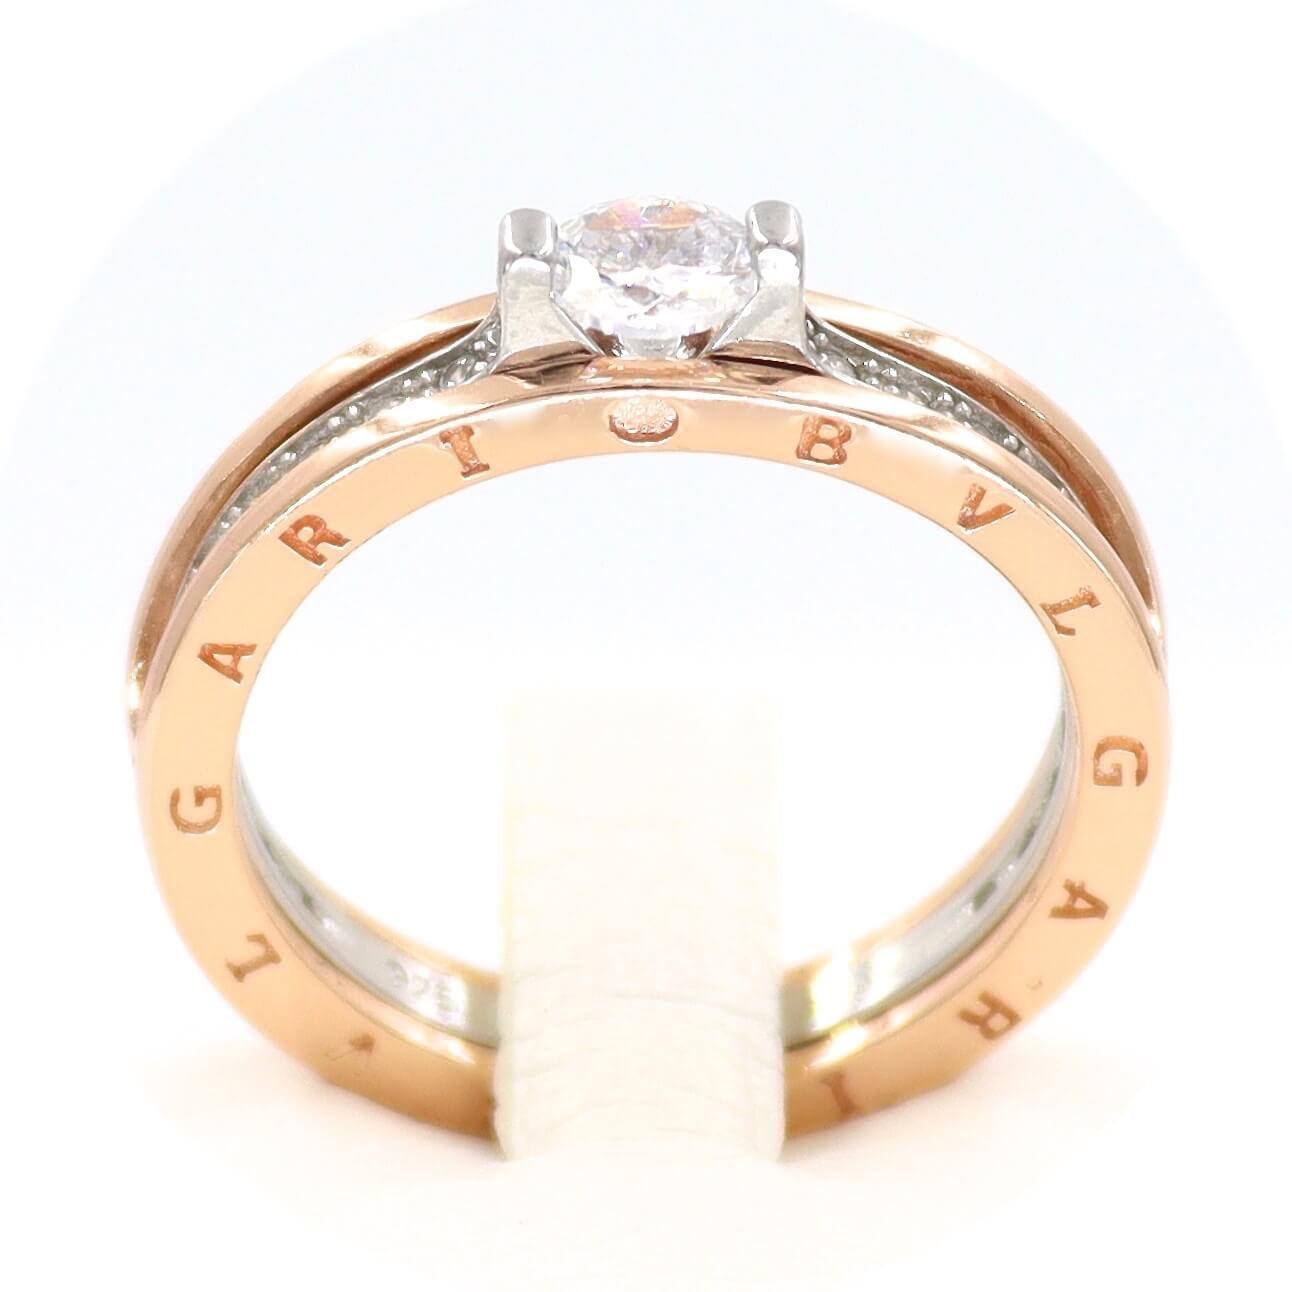 Ασημένιο δαχτυλίδι σε ροζ χρυσό χρώμα, με λευκές πέτρες περιφερειακά